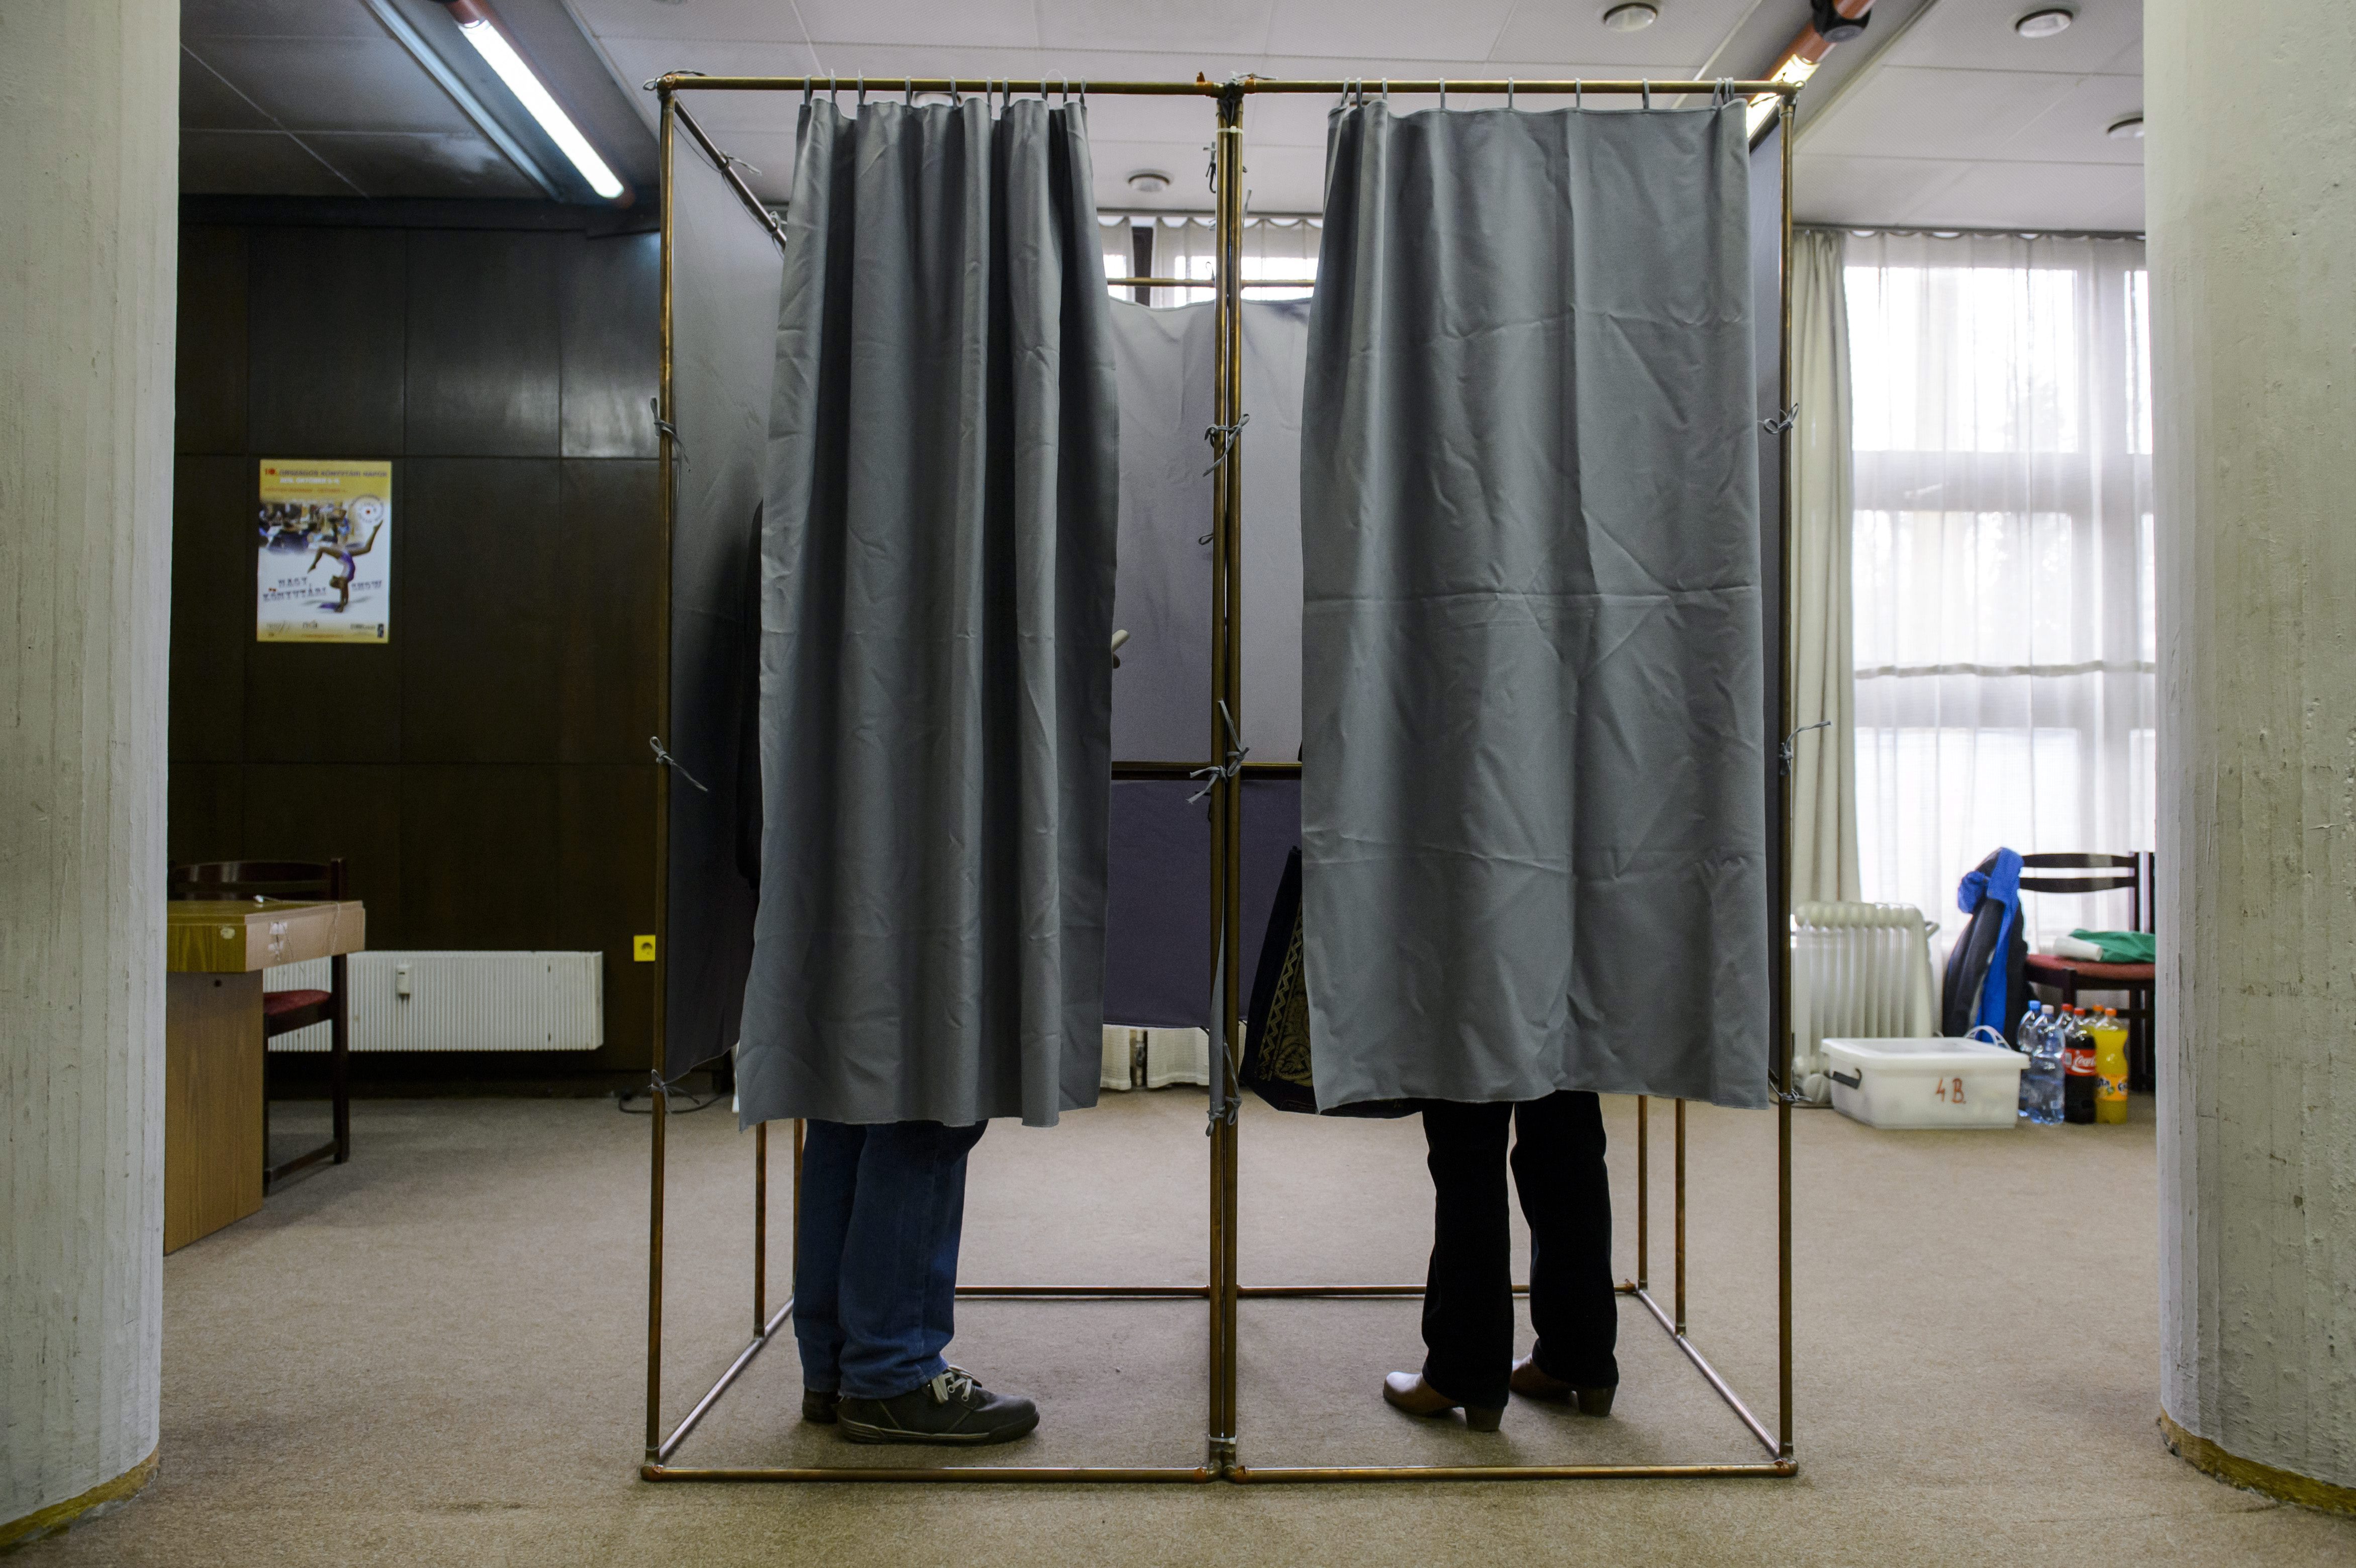 Több mint 400 párt lehet az országban a jövő évi választásokra